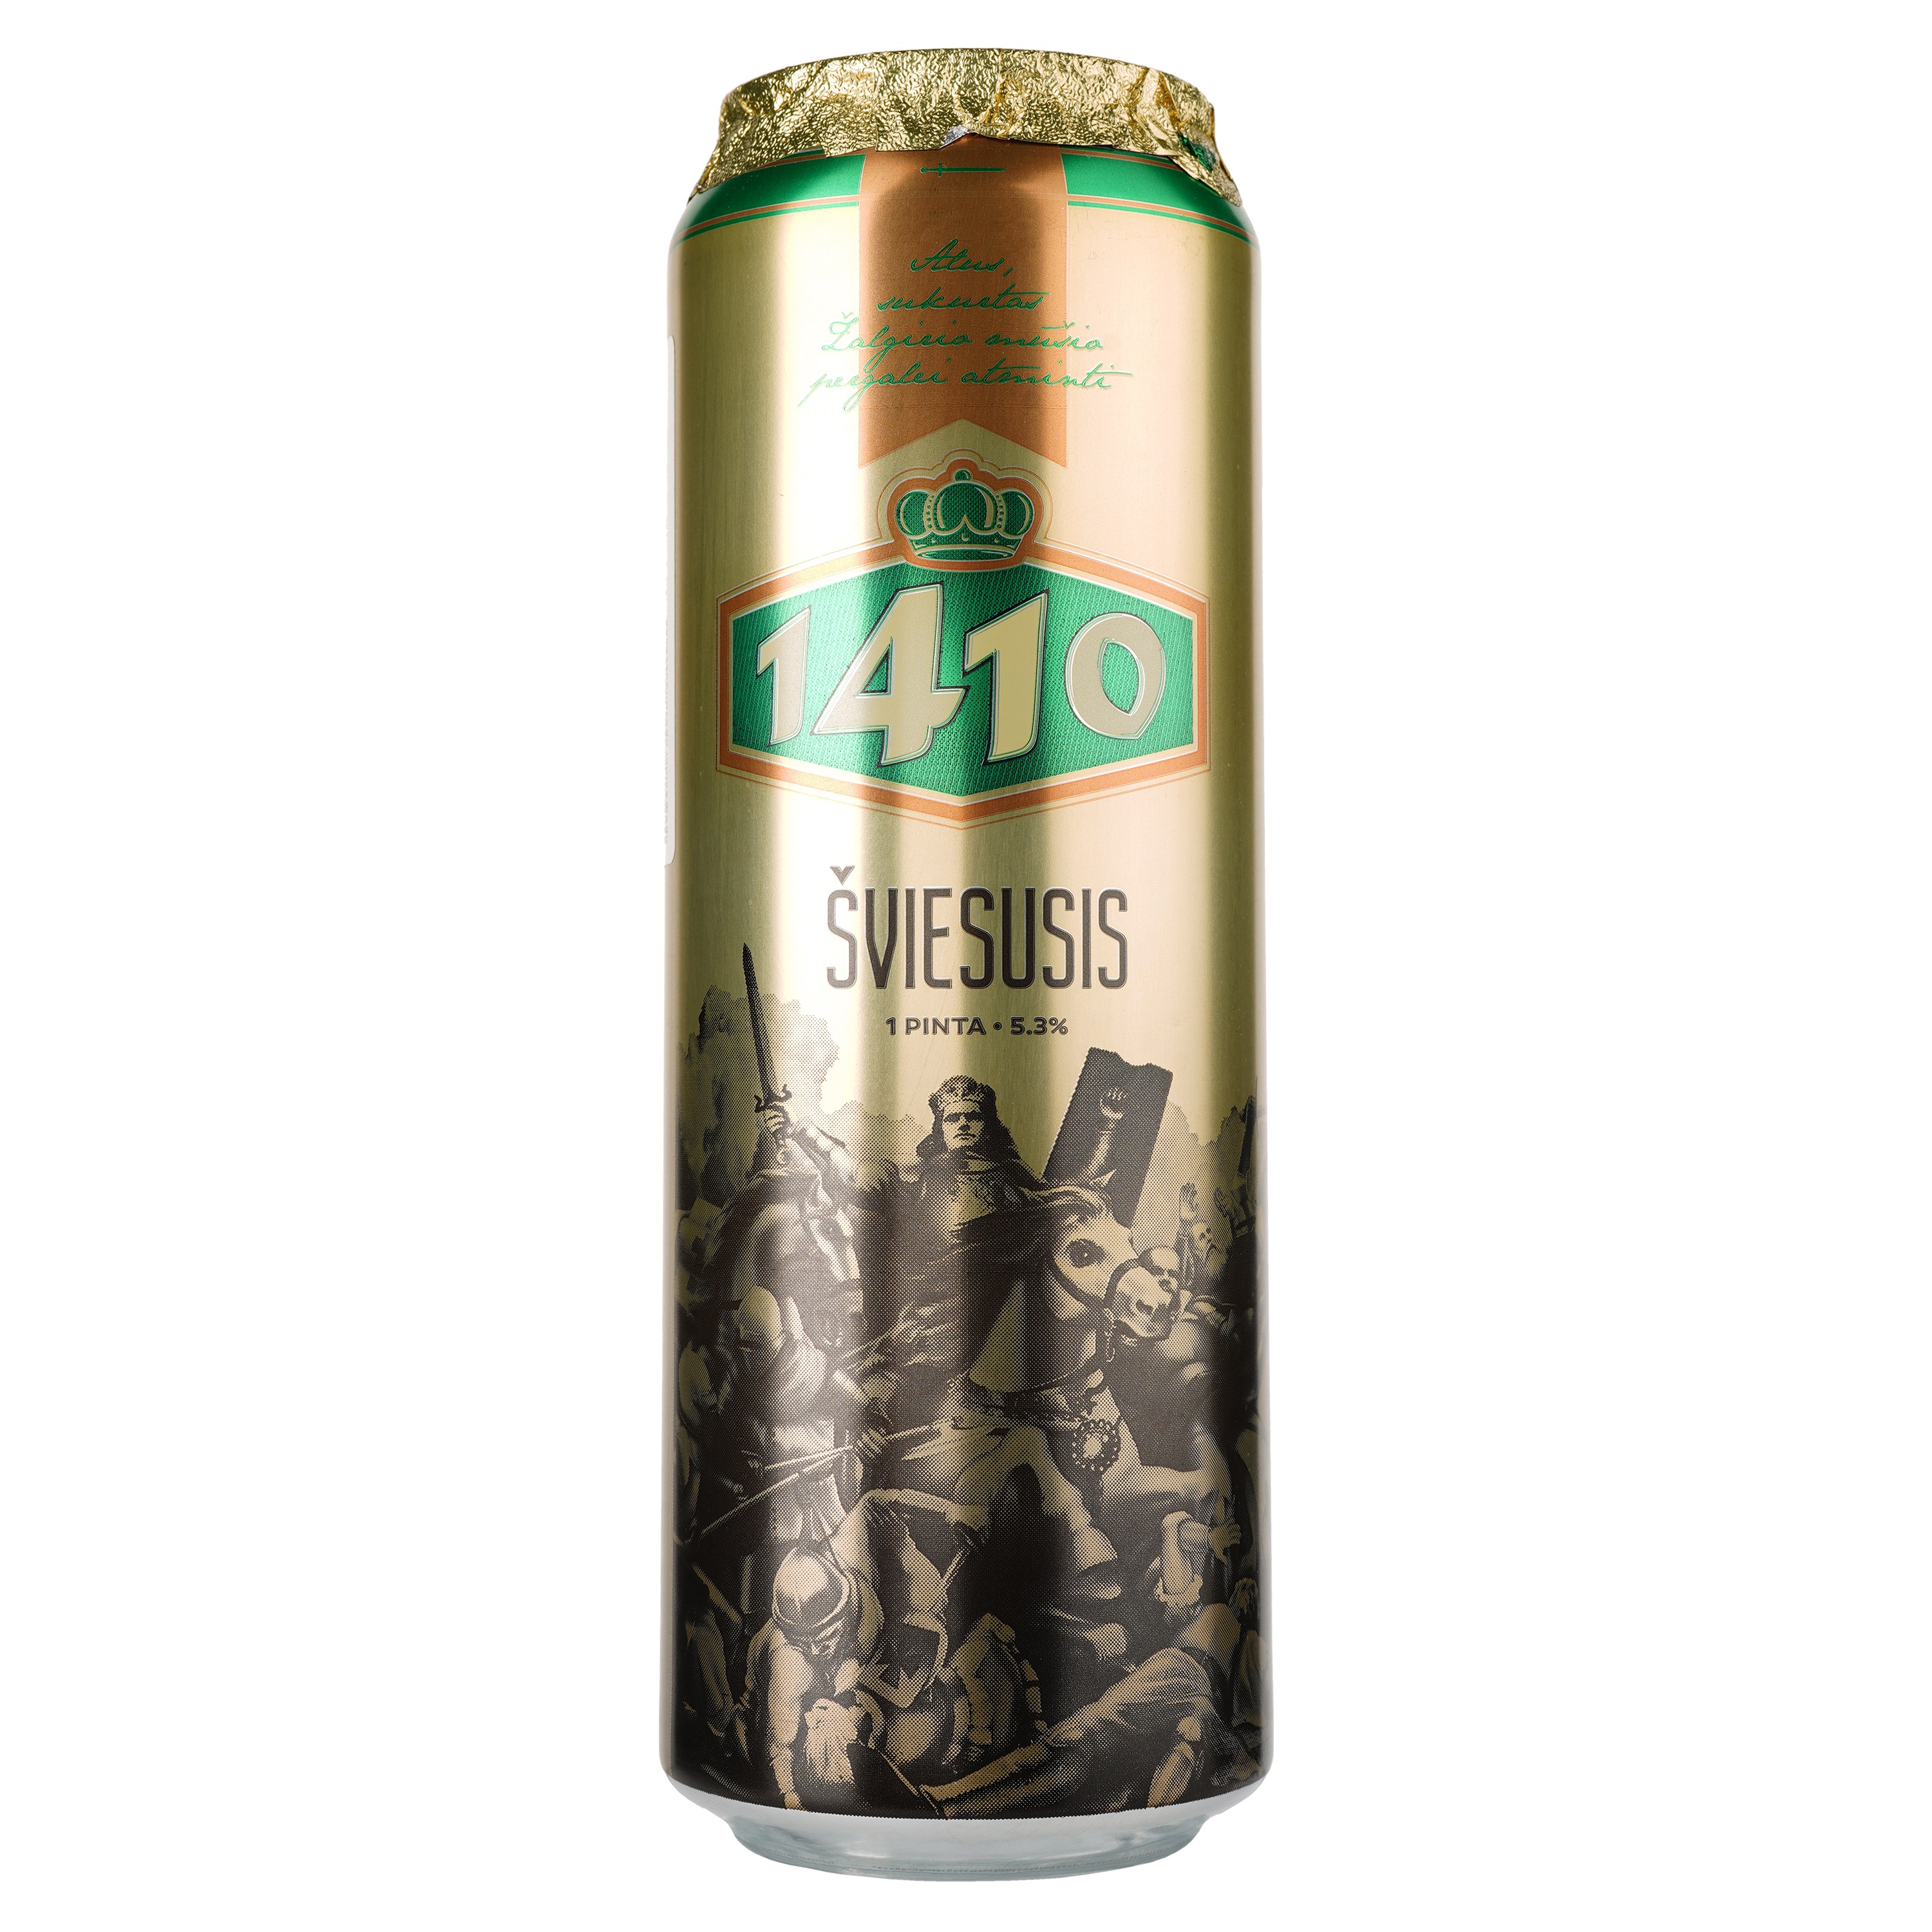 Пиво Volfas Engelman 1410 светлое, 5.3%, ж/б, 0.568 л - фото 1